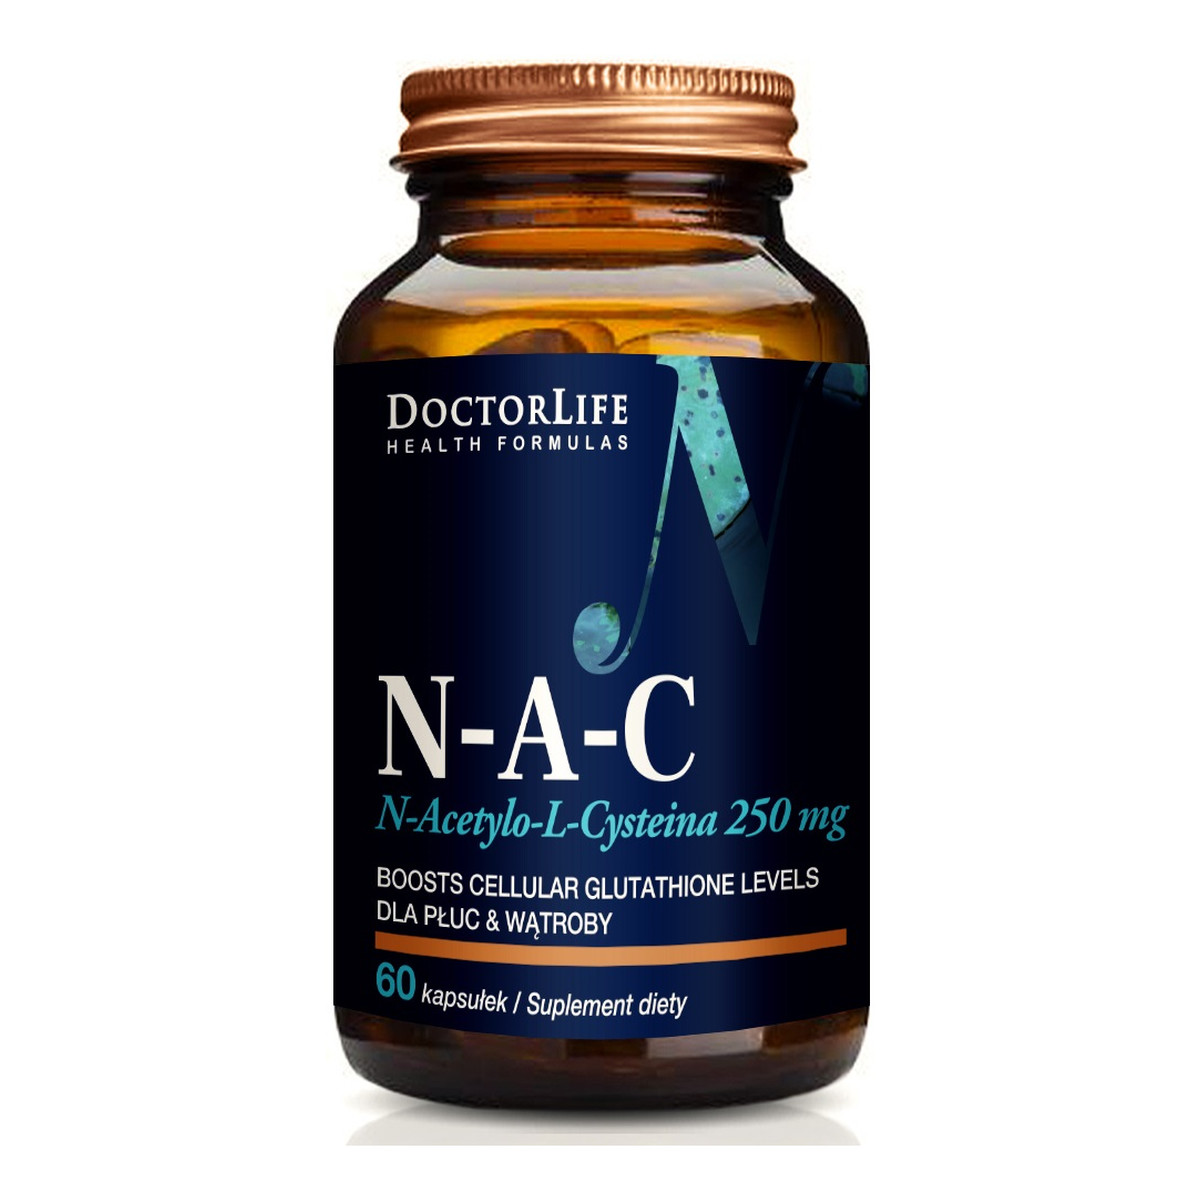 Doctor Life N-a-c n-acetylo-l-cysteina 250mg suplement diety 60 kapsułek